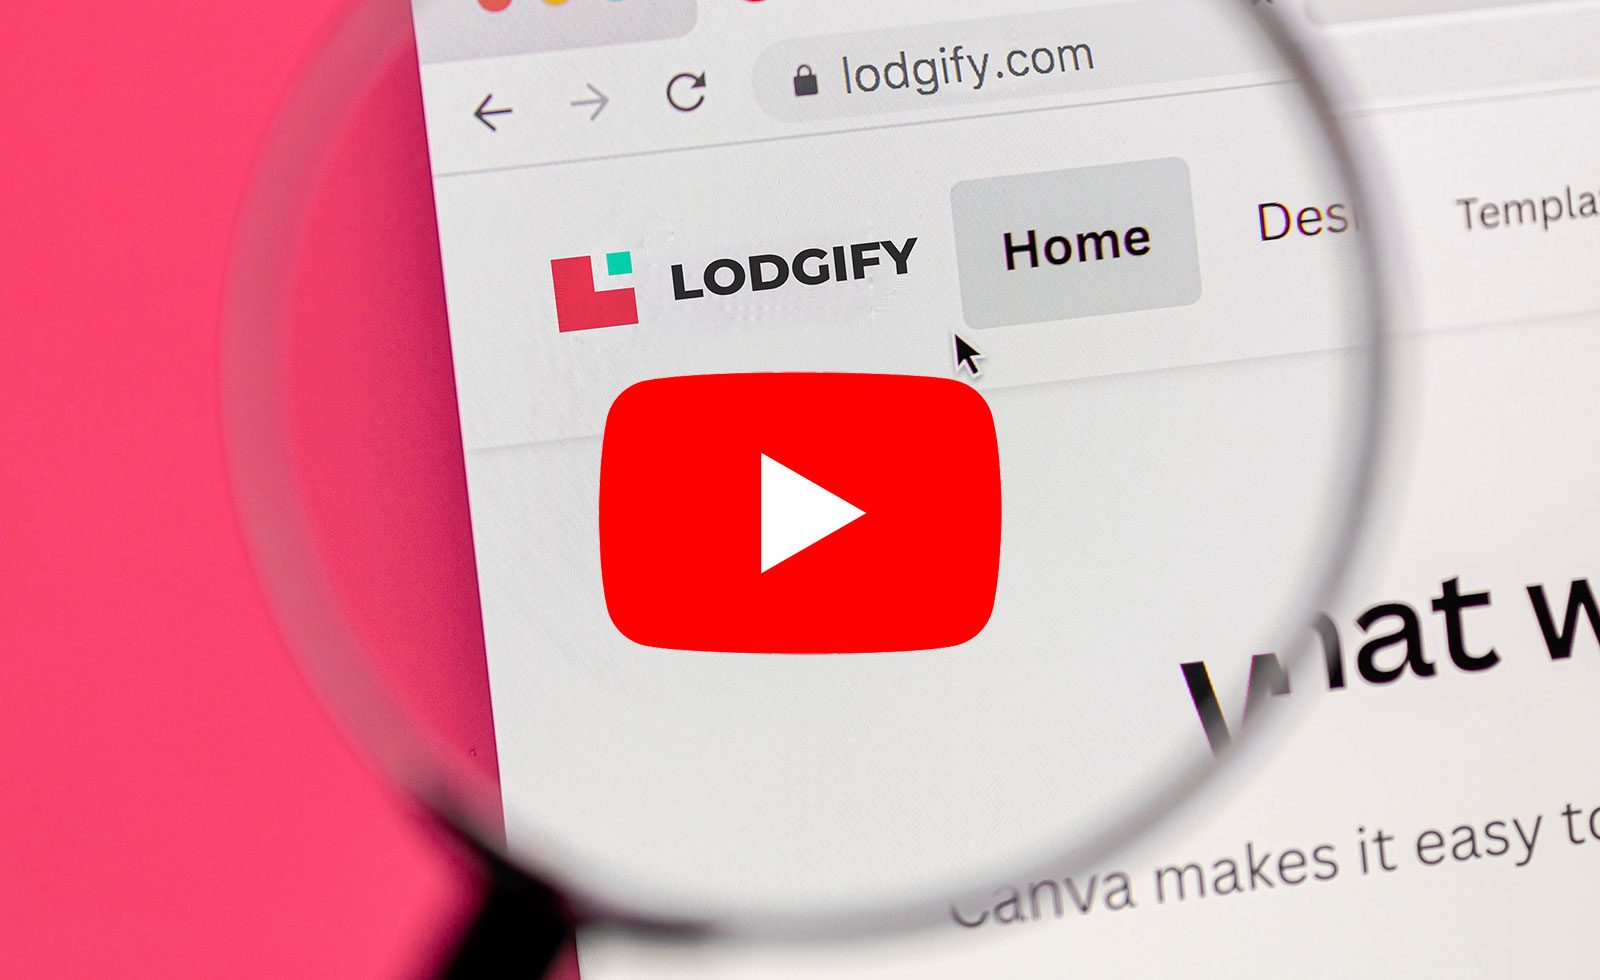 Lodgify Homepagebaukasten Test und Anleitung auf Youtube